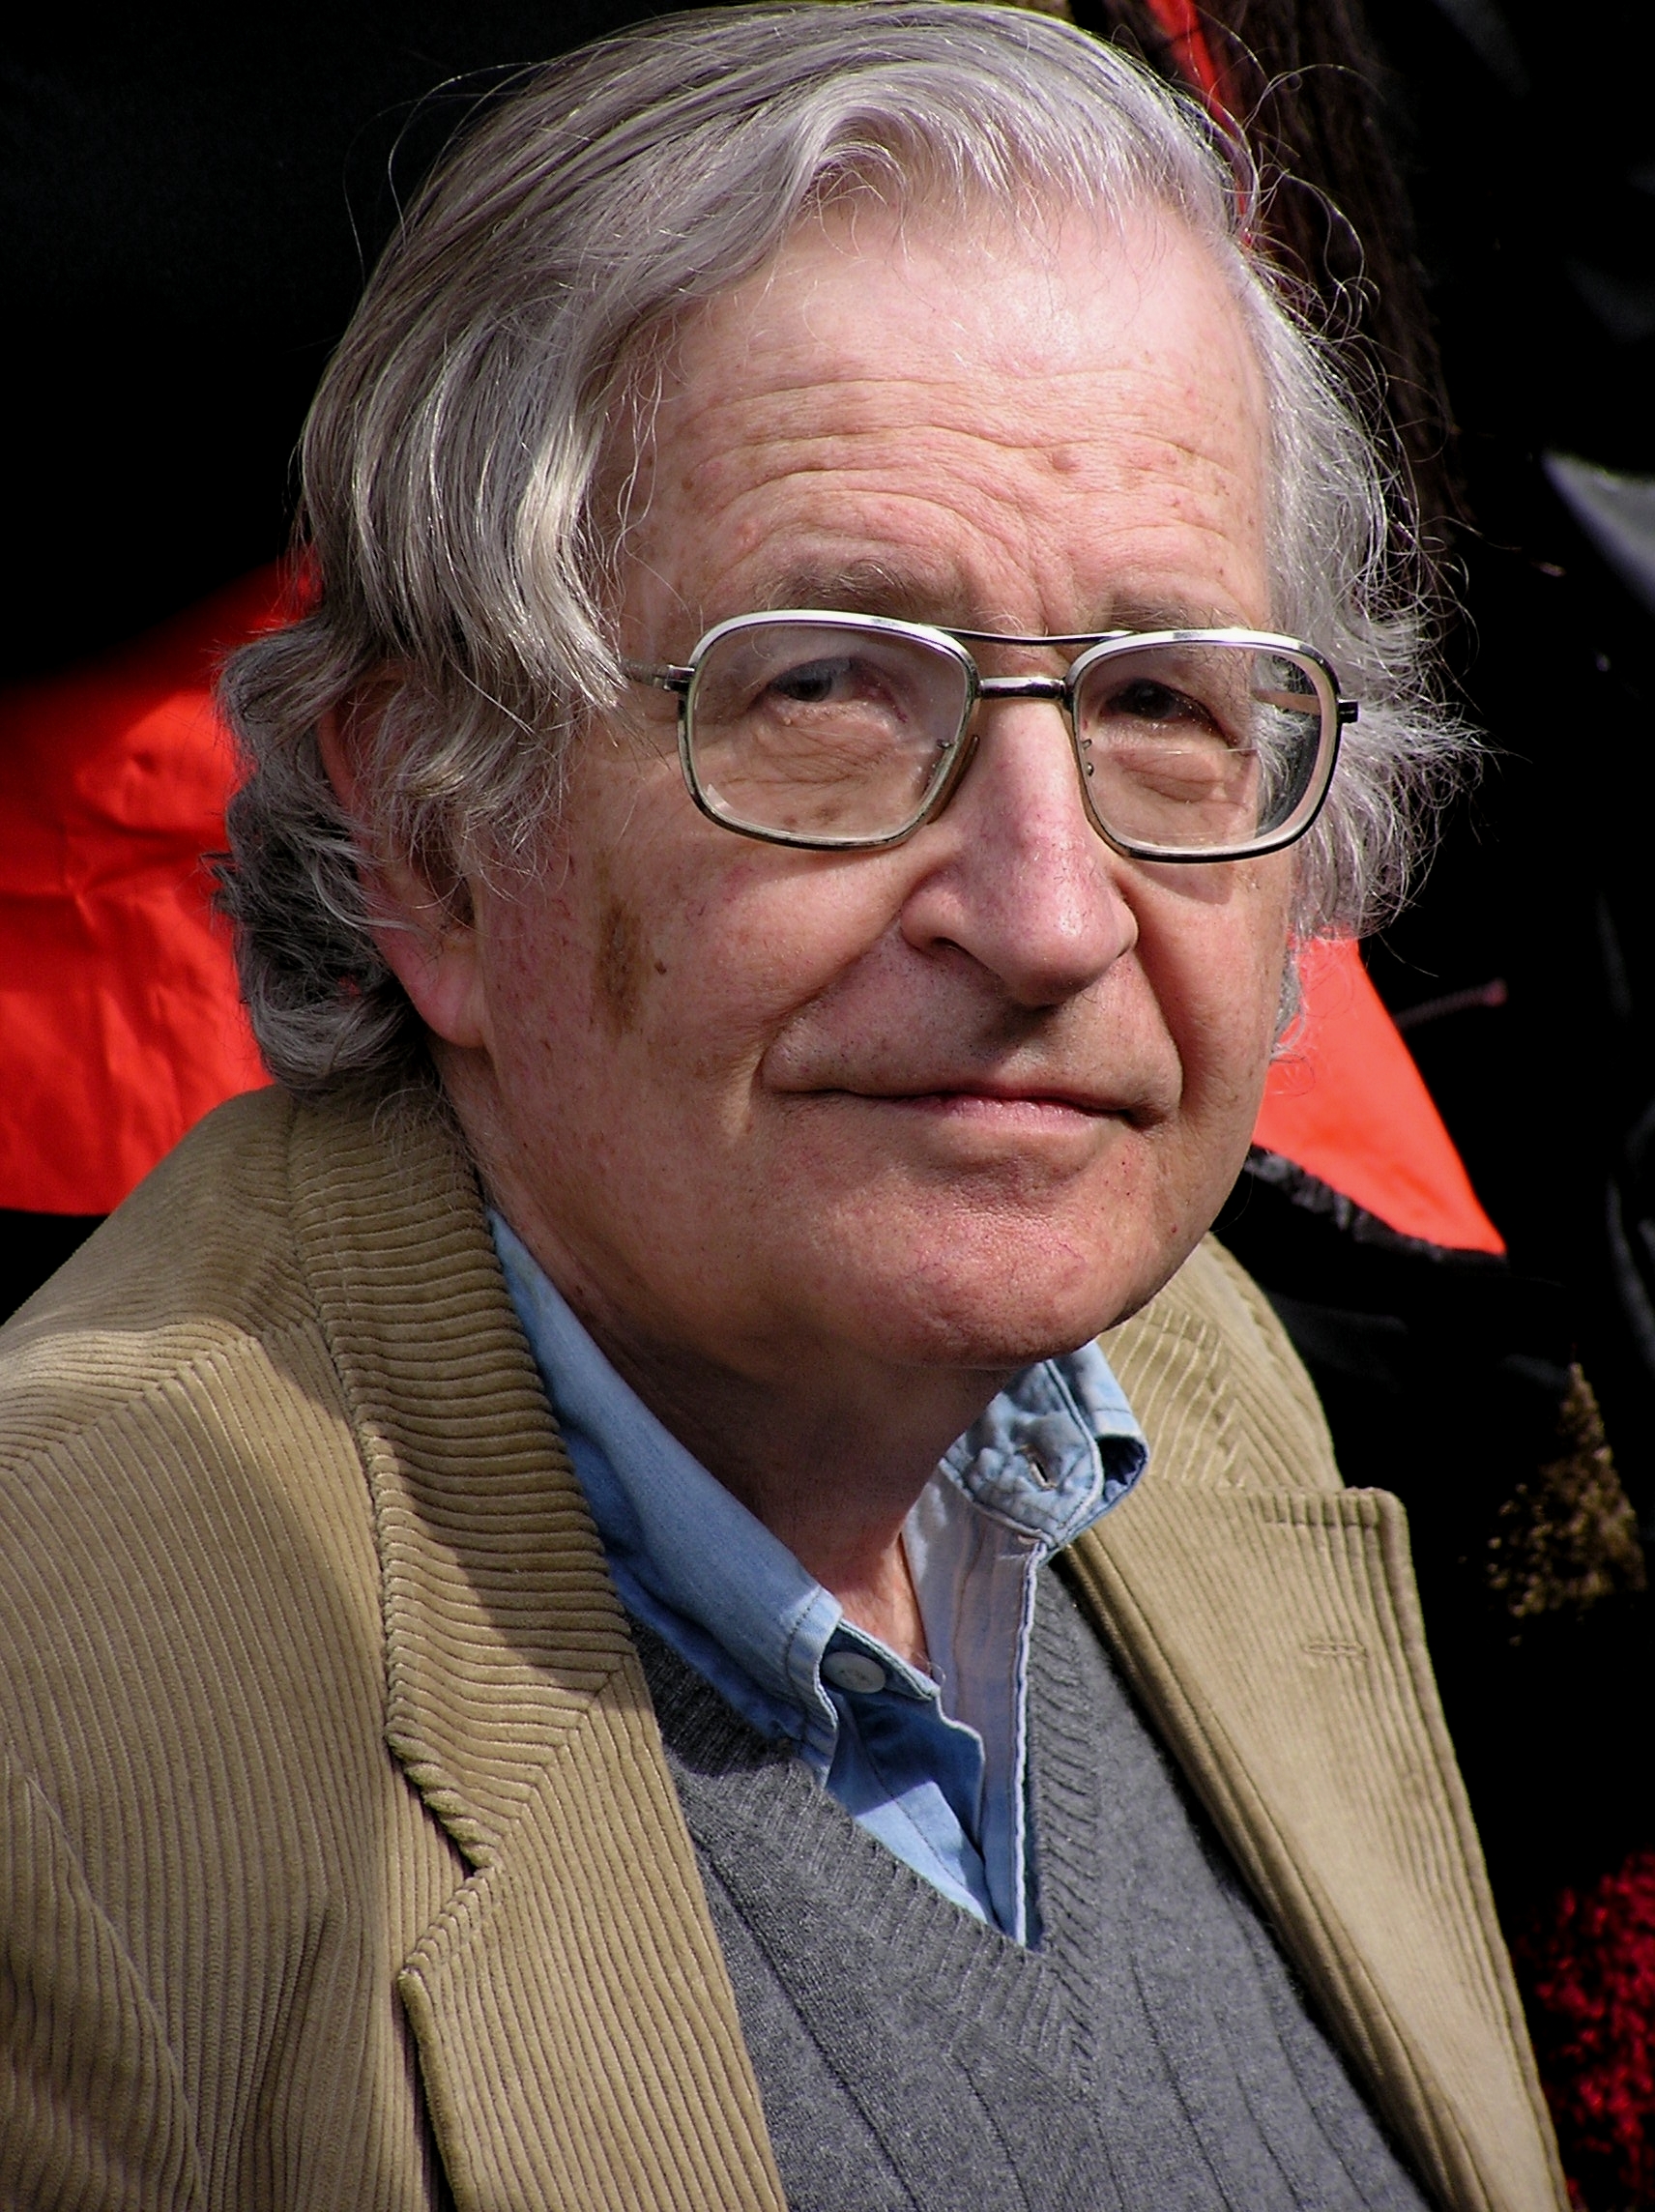 Quines són les opinions polítiques de Noam Chomsky?